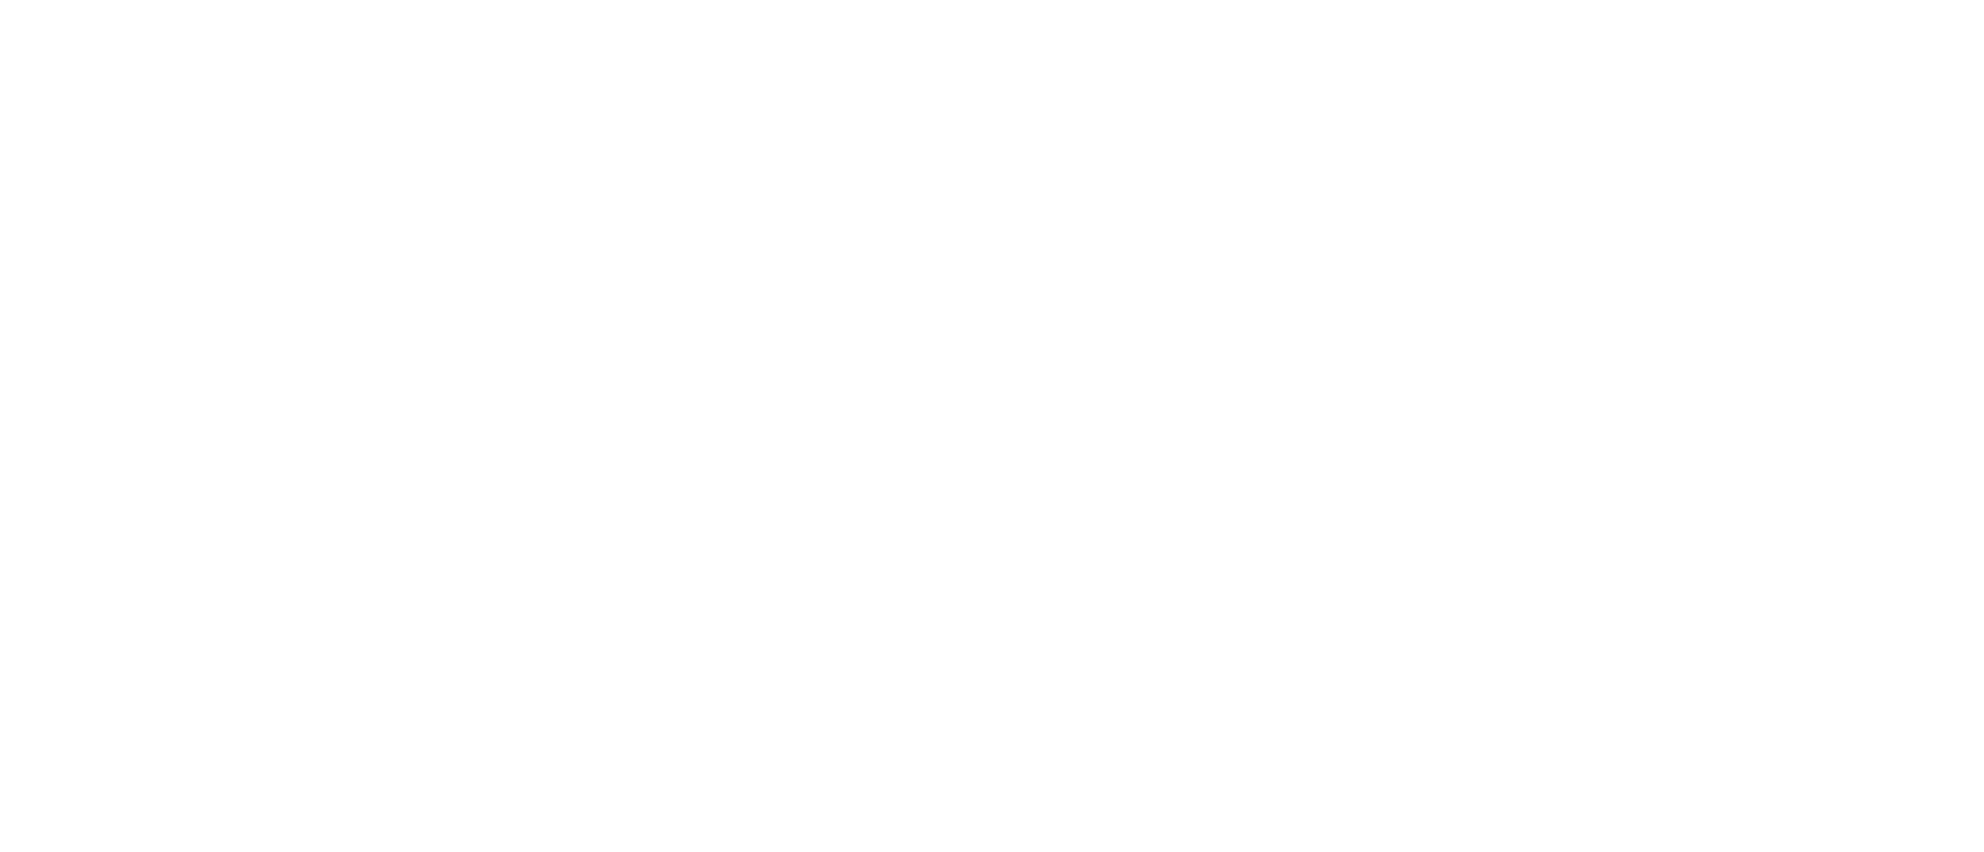 CAMPHOR TREE VILLAGE